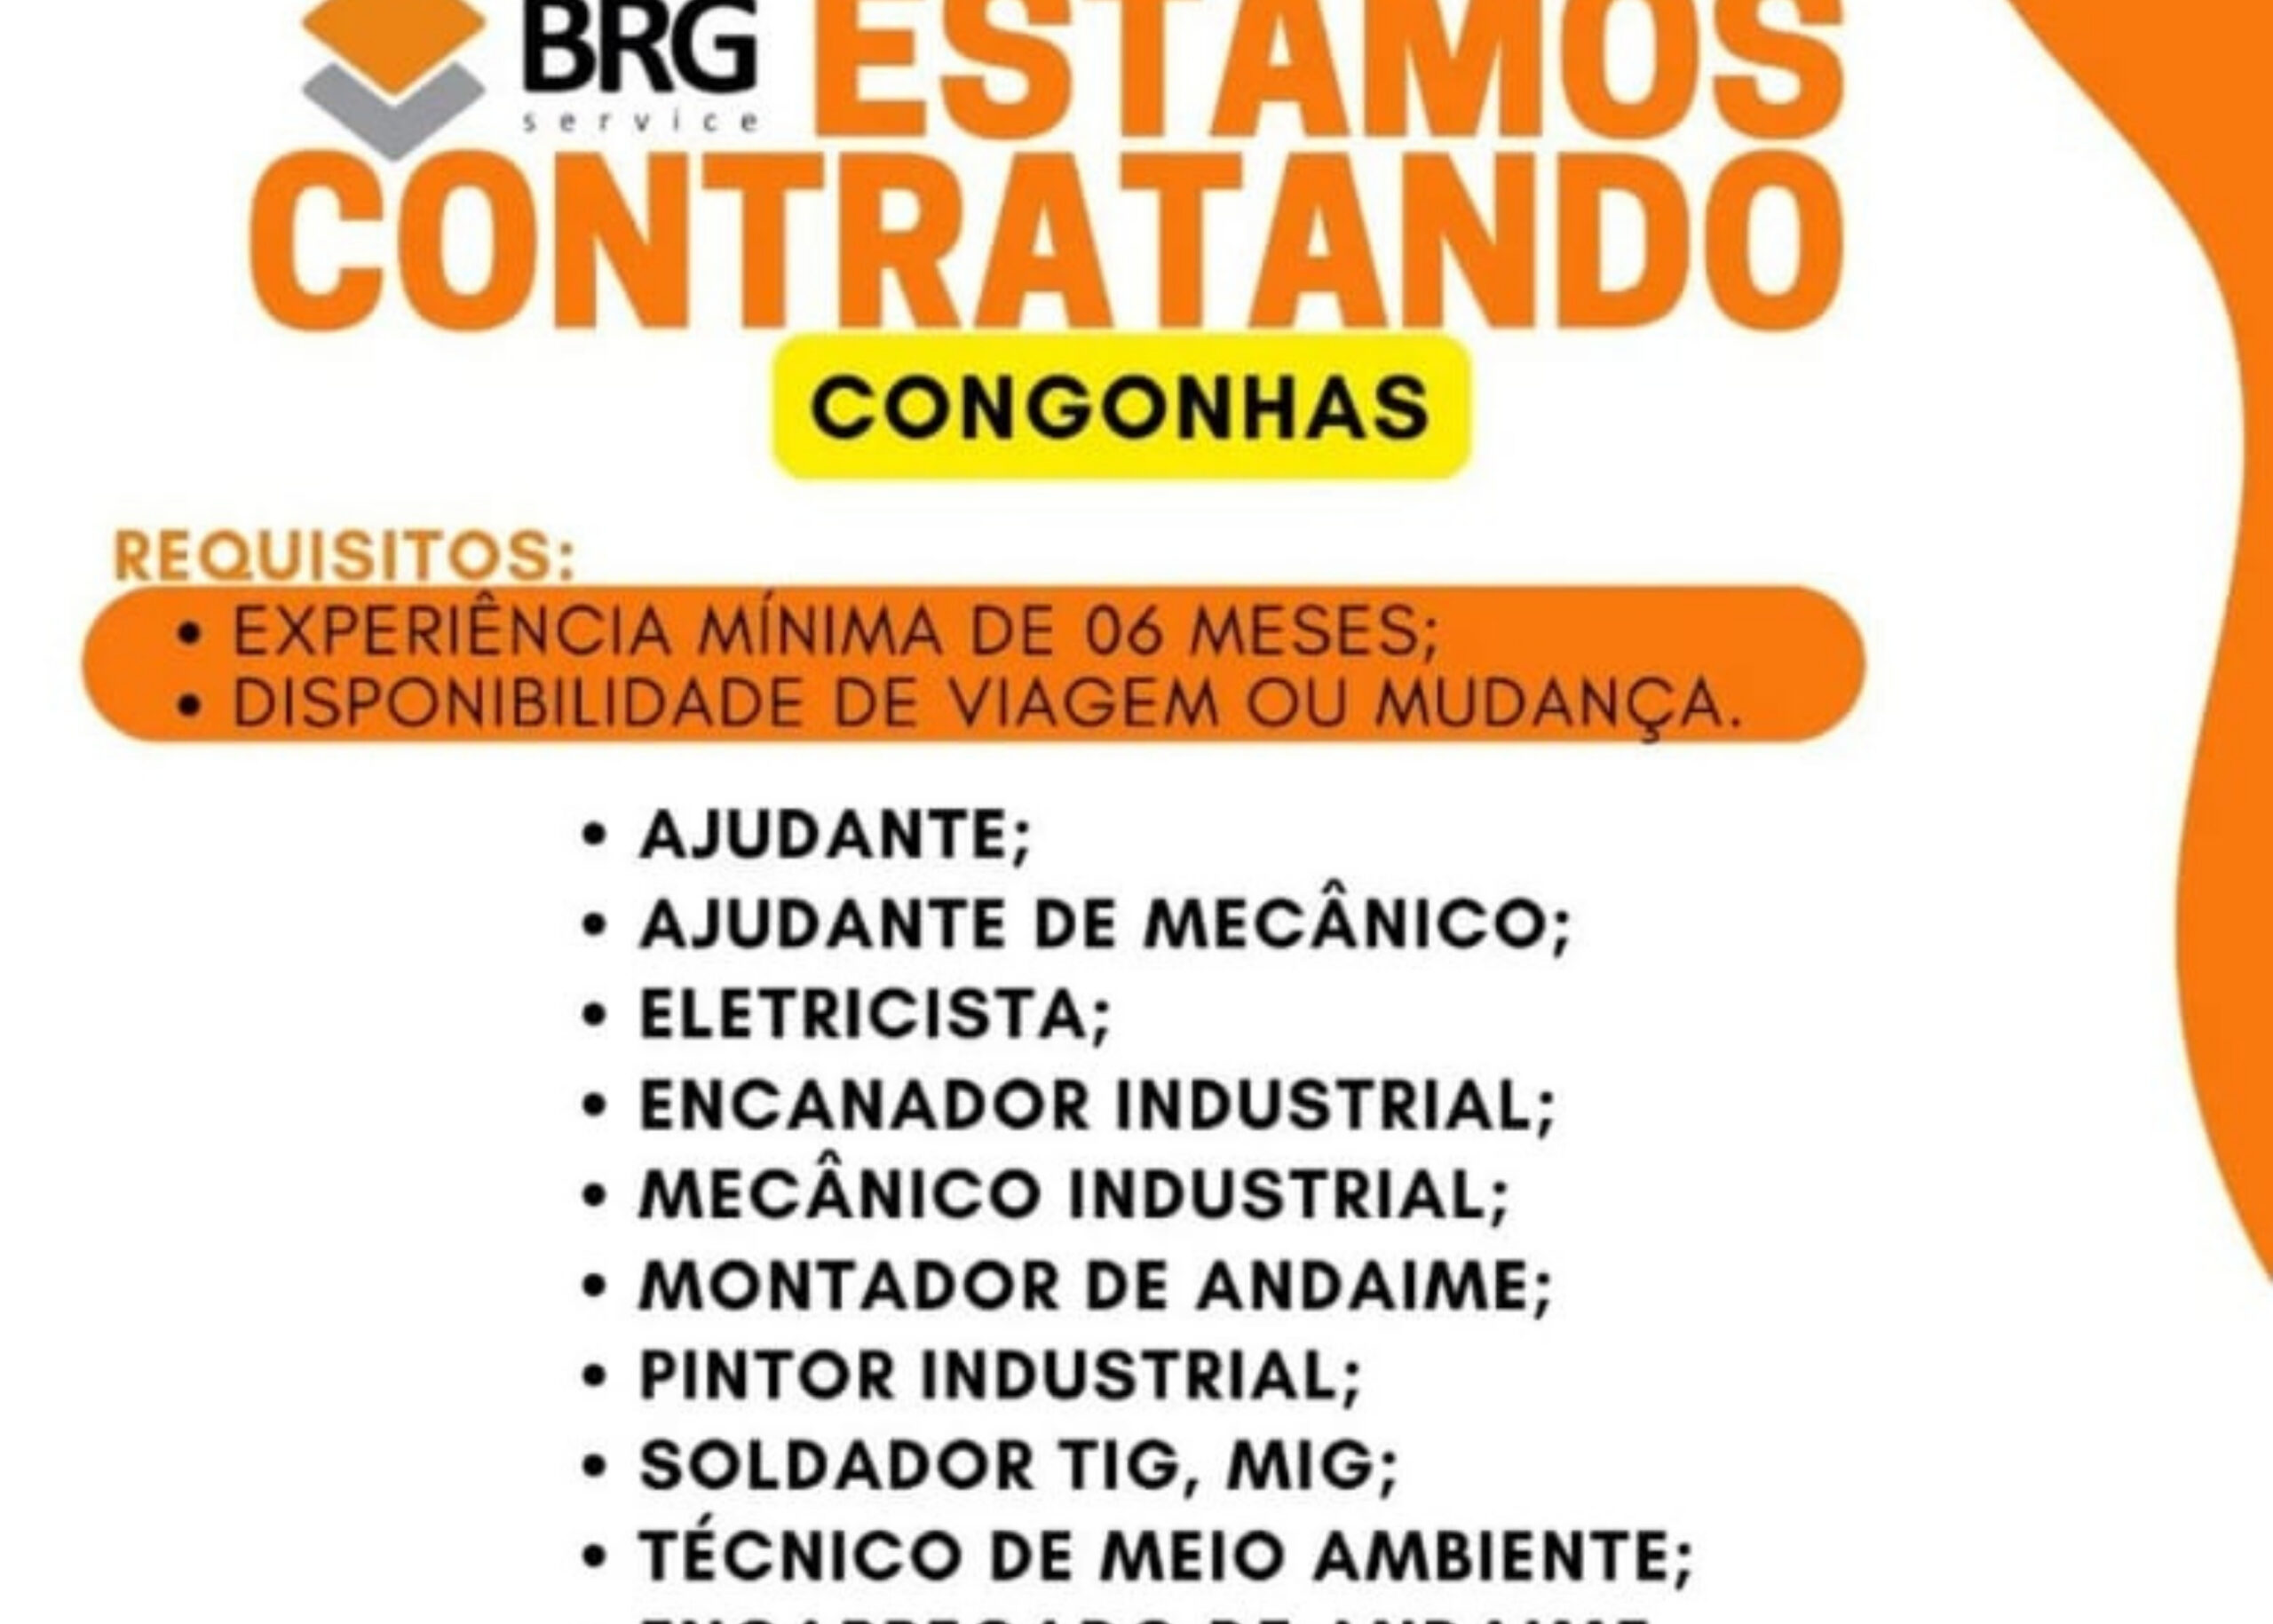 BRG Service tem vagas de emprego abertas em Congonhas (MG)